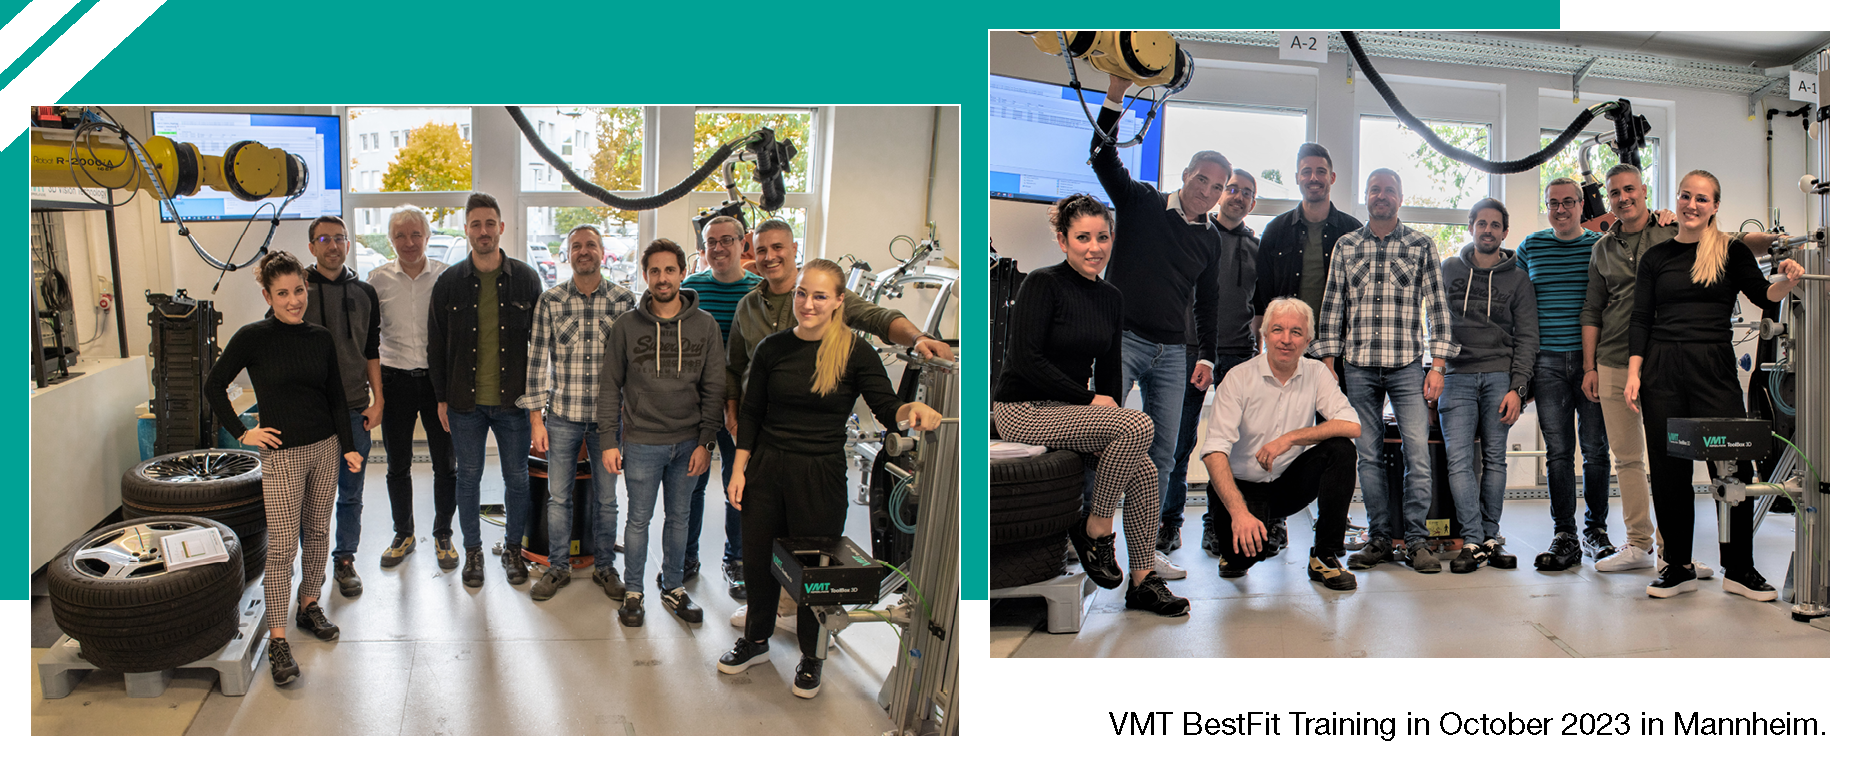 VMT BestFit Training in Mannheim